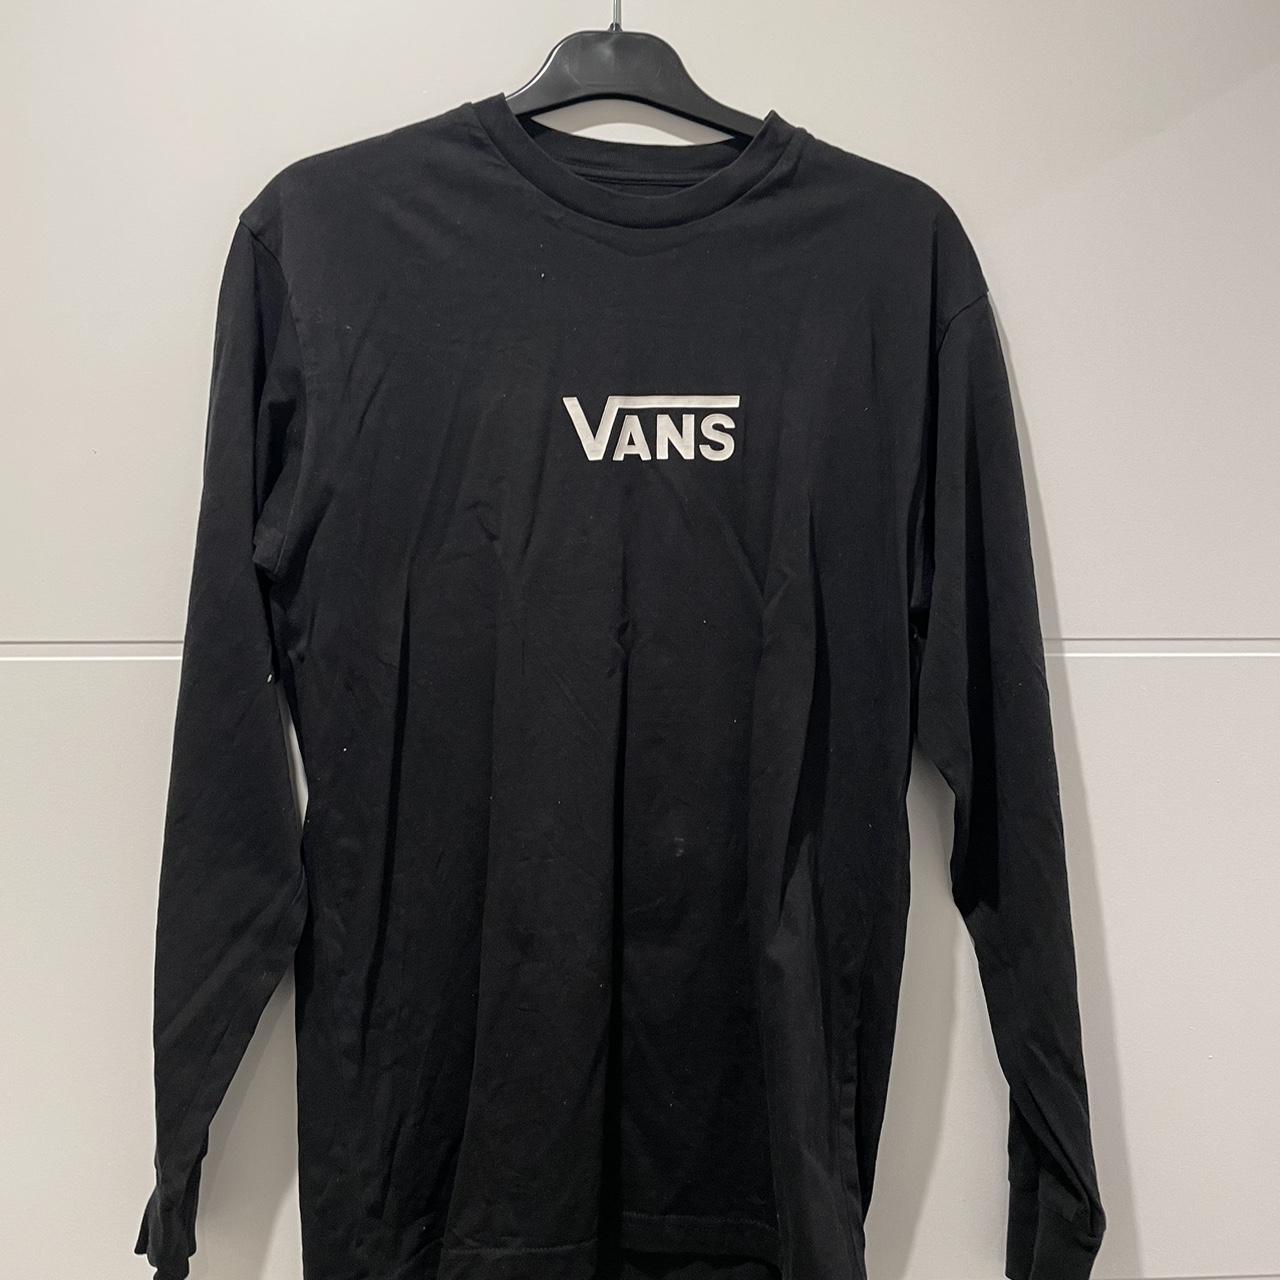 Vans Men's Black and White T-shirt | Depop